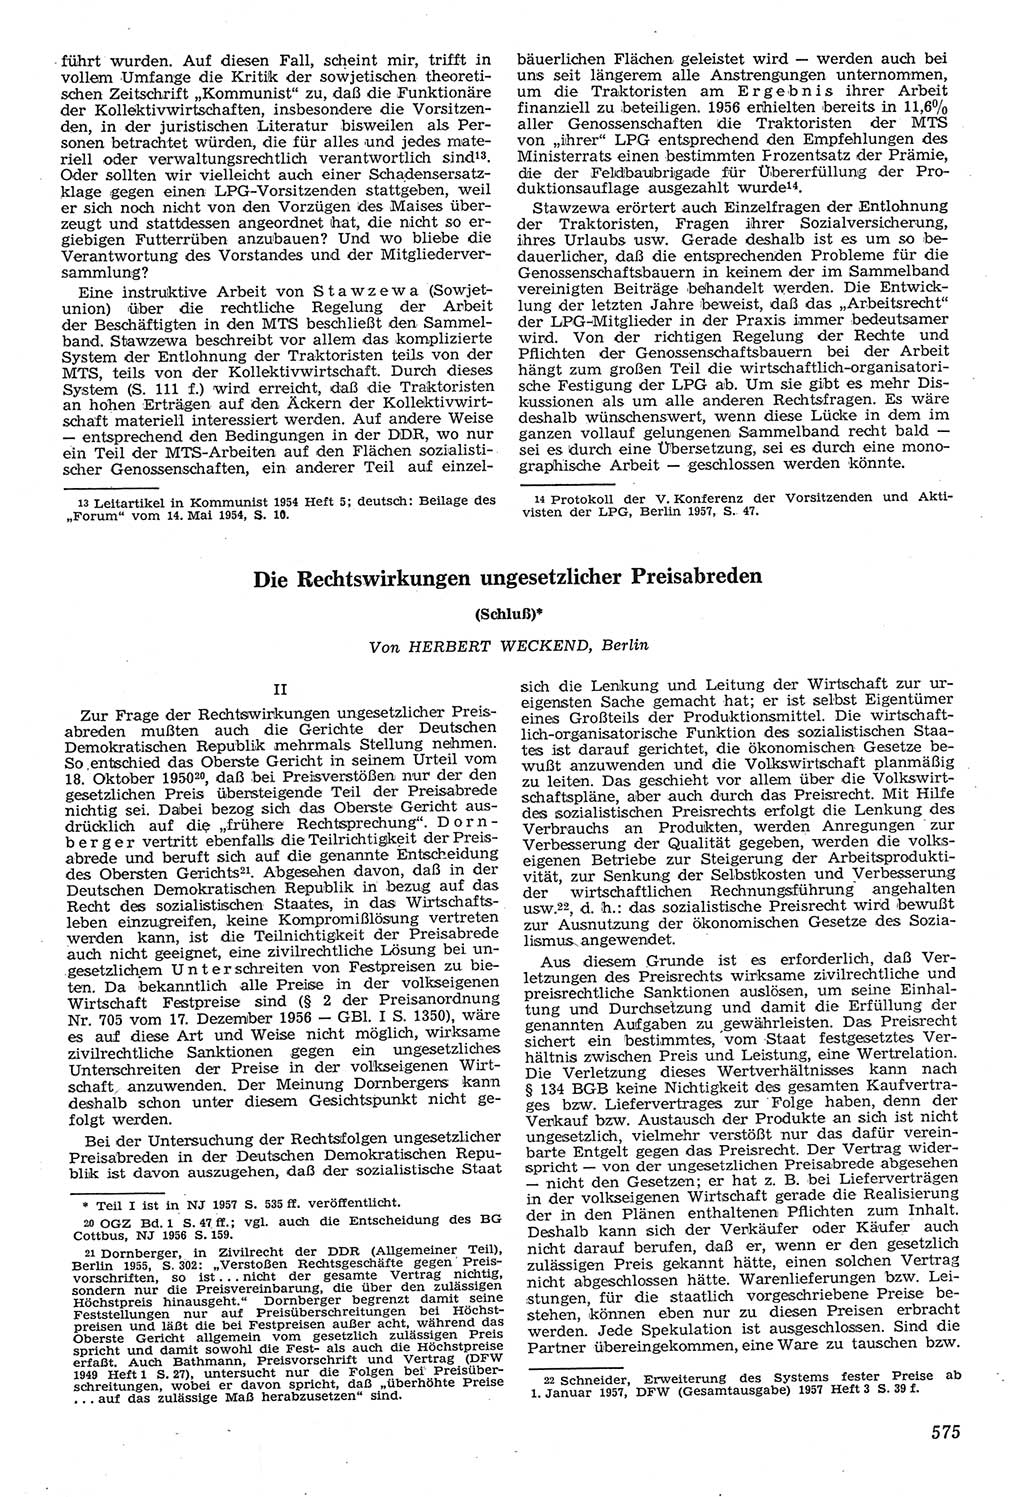 Neue Justiz (NJ), Zeitschrift für Recht und Rechtswissenschaft [Deutsche Demokratische Republik (DDR)], 11. Jahrgang 1957, Seite 575 (NJ DDR 1957, S. 575)